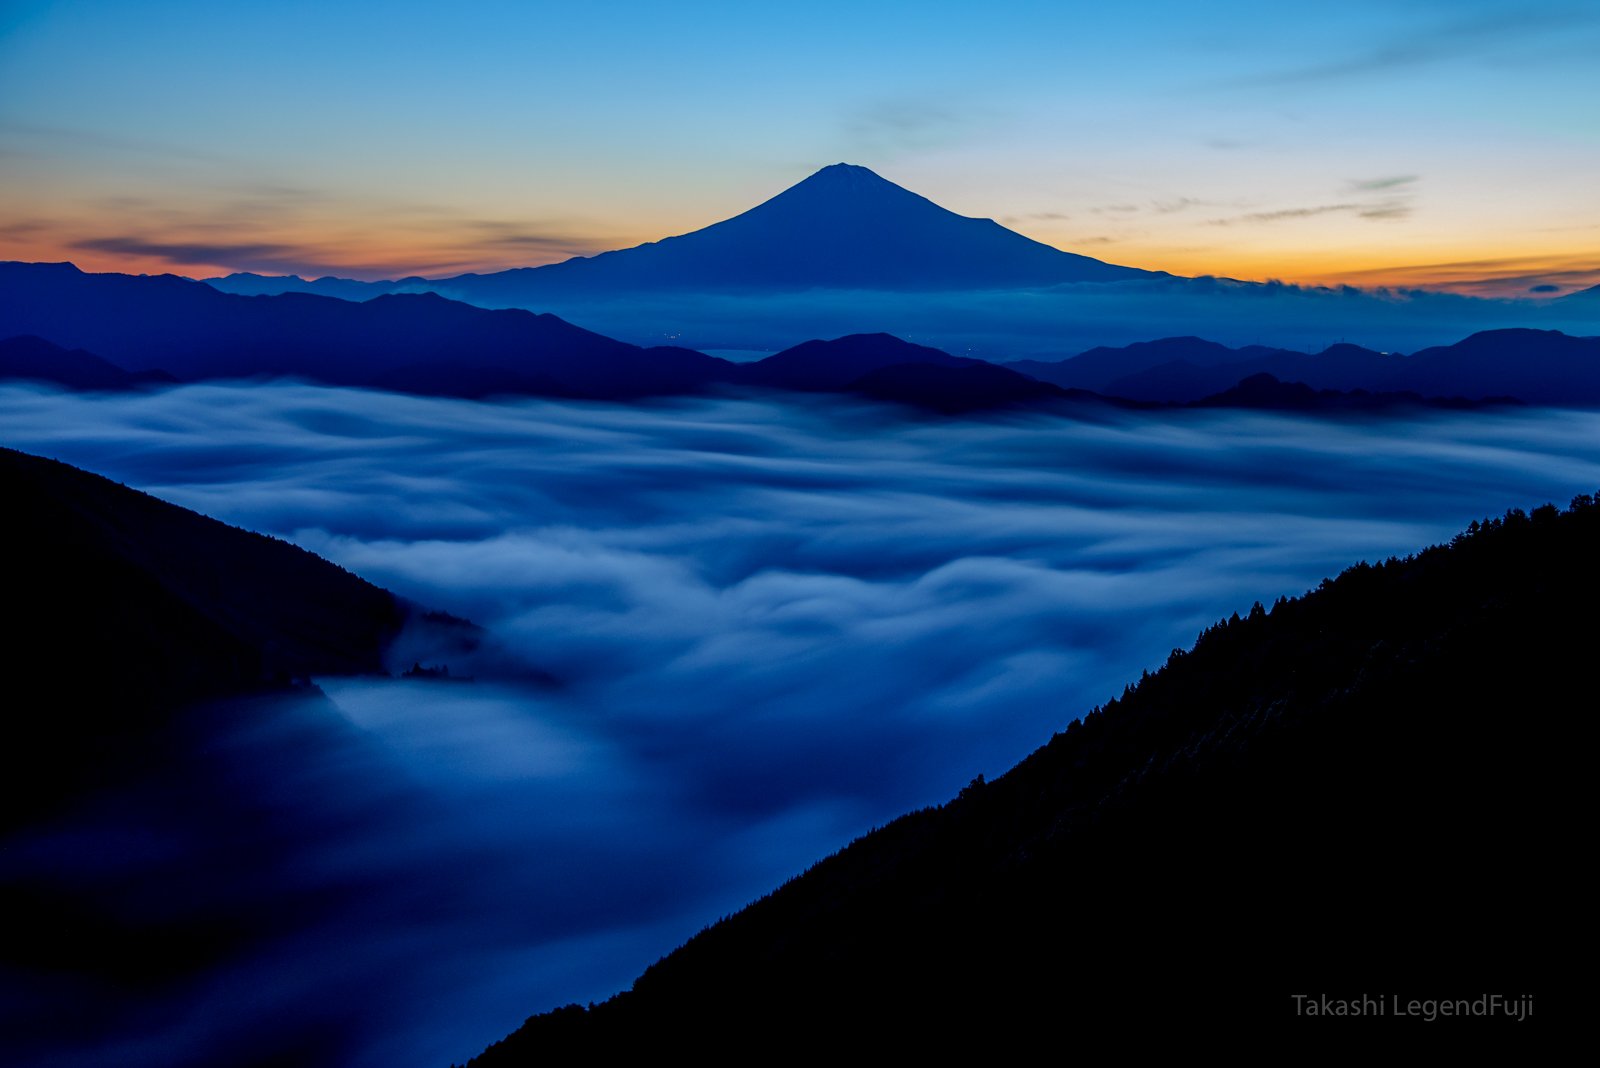 Fuji,mountain,dawn,Japan,sky,cloud,river,morning,sky,blue,beautiful,amazing, Takashi